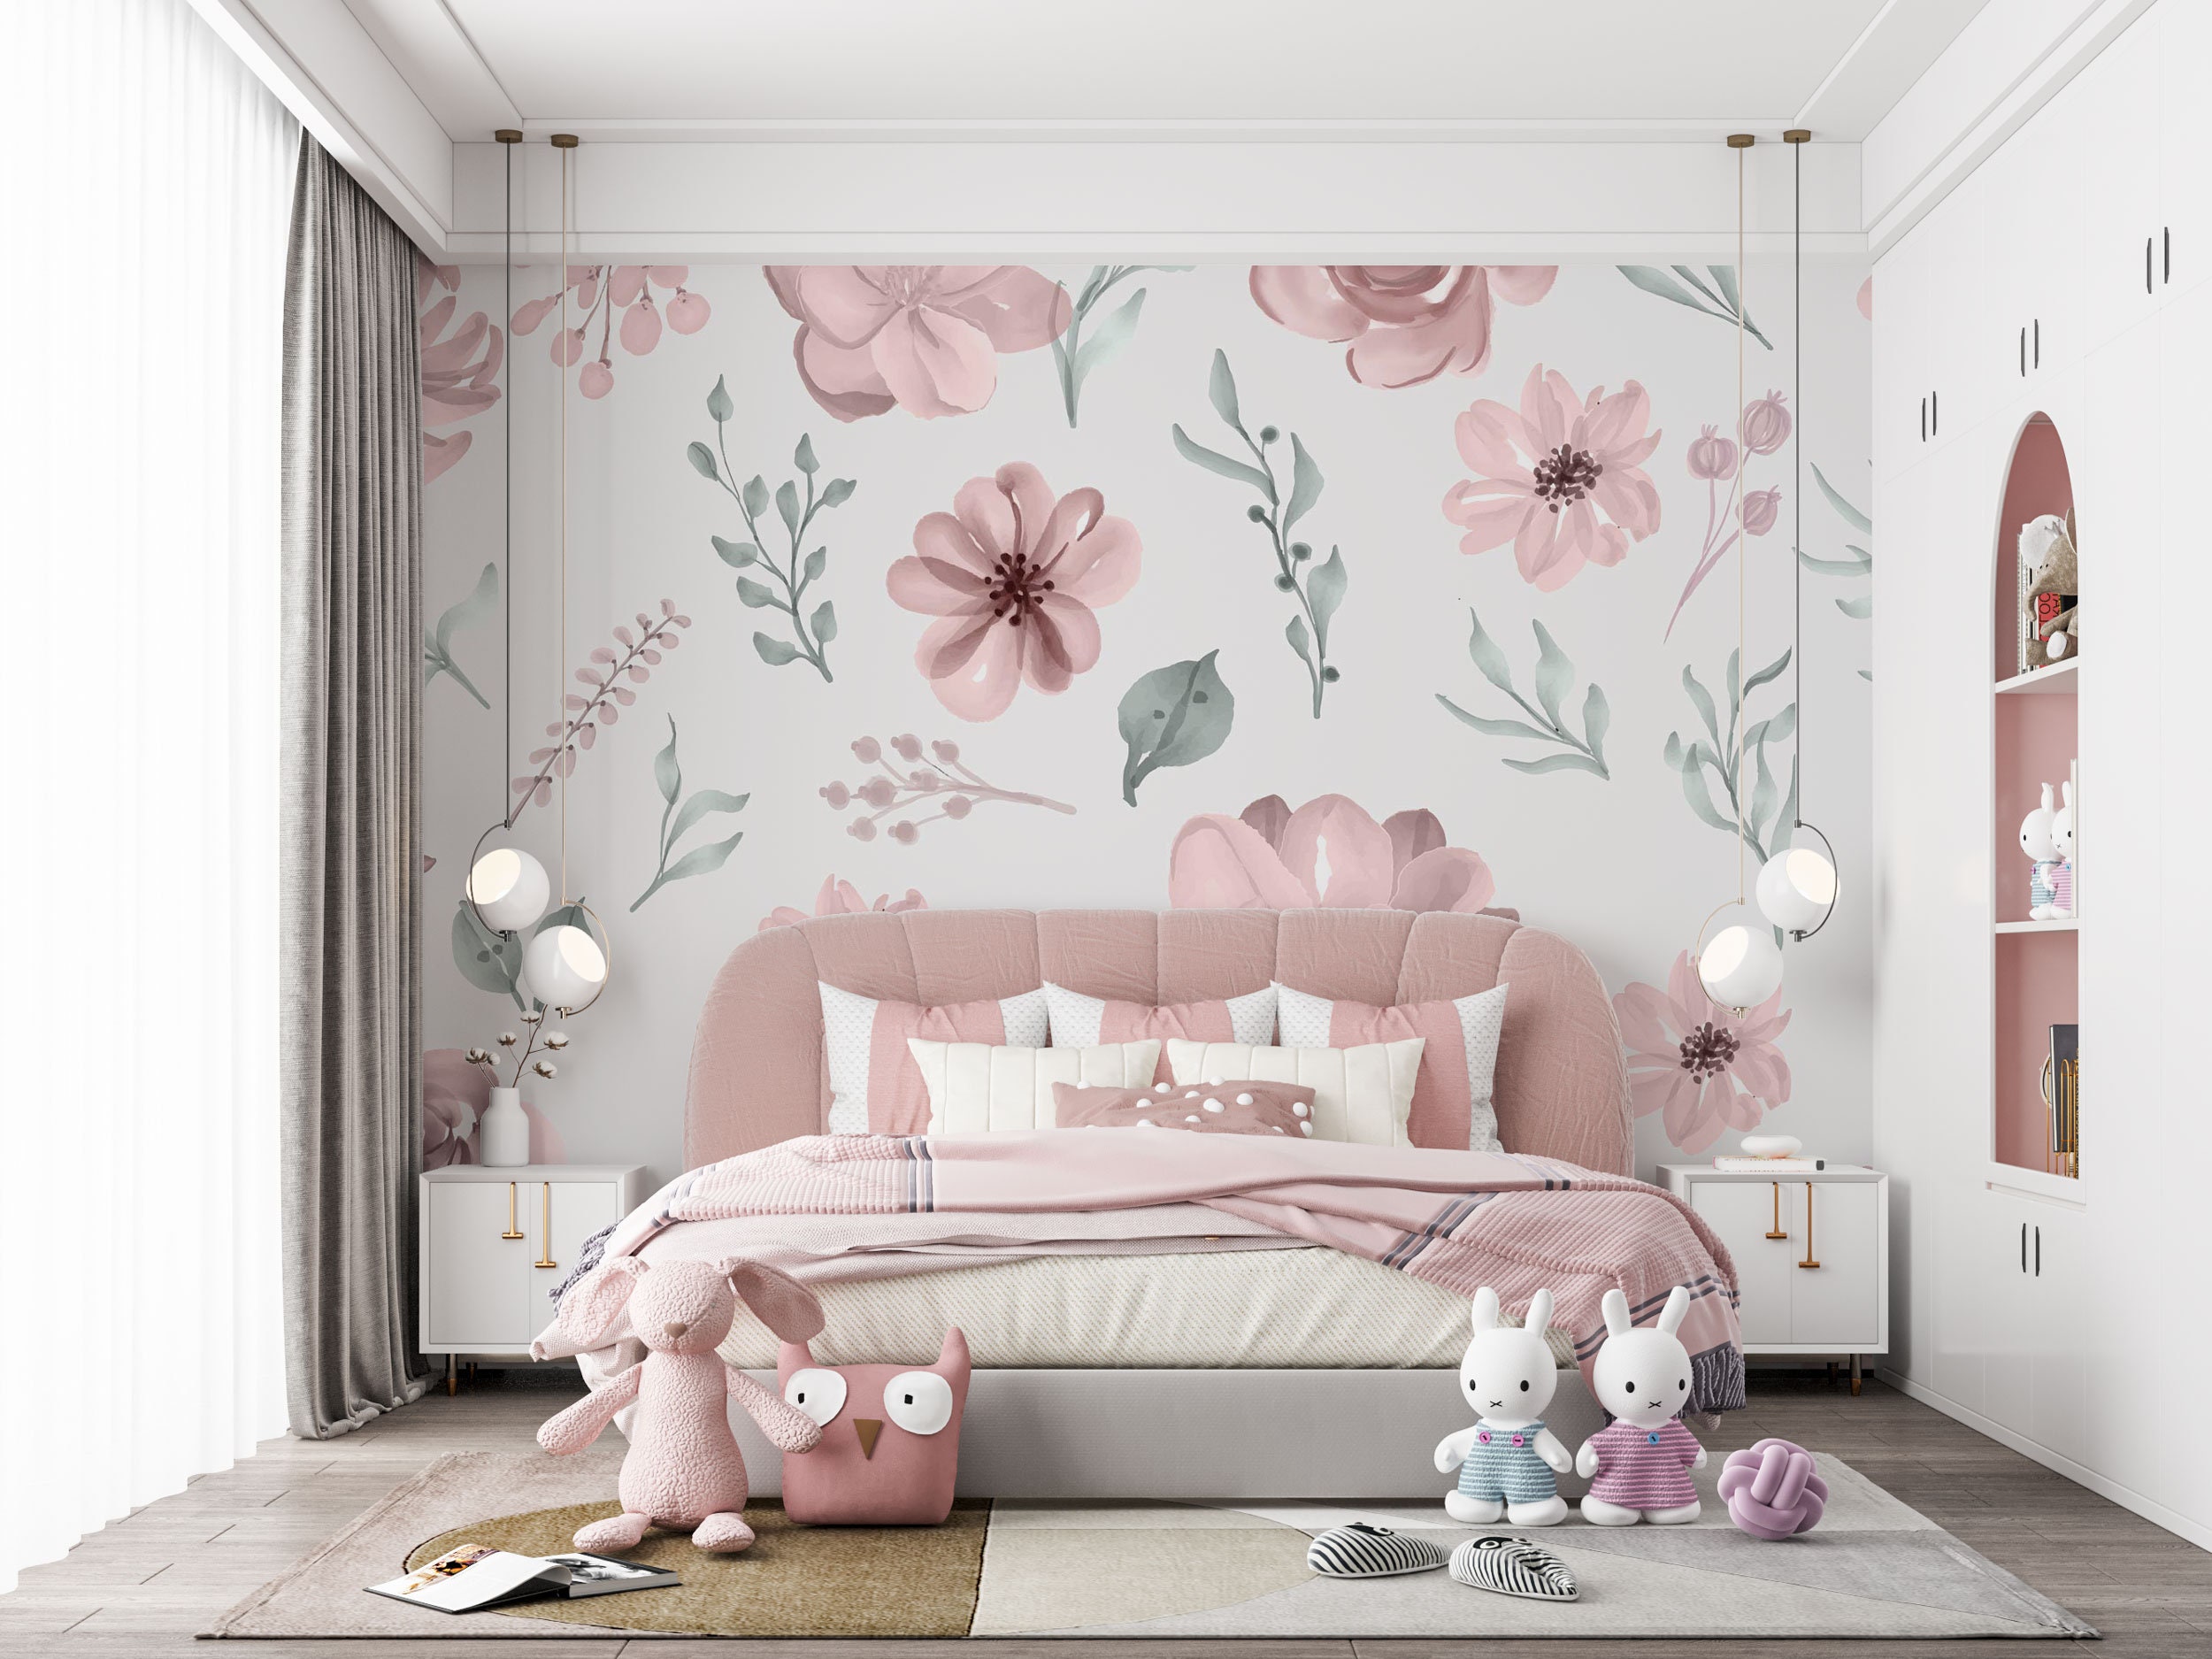 Tapete, Vintage Pastell Kinderzimmer Blumen kleben Wandbild Kinderzimmer und rosa Baby-Raum-Dekor-Wandbild, Blumen Rosa Tapete, schälen rosa